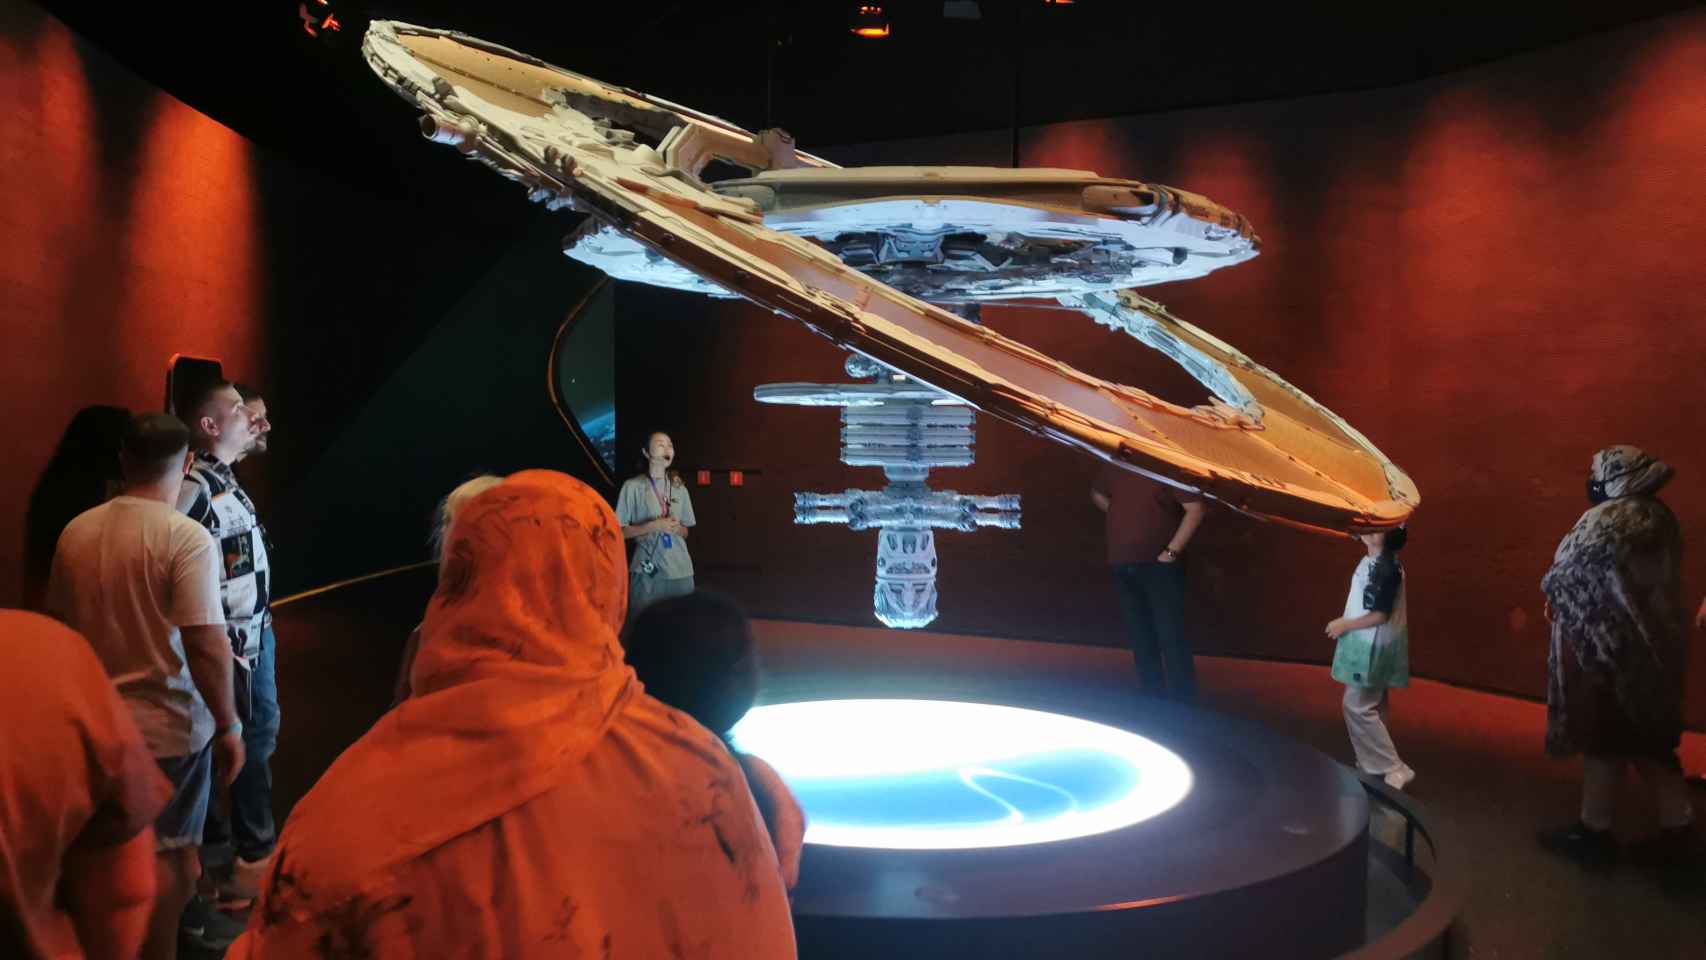 Maqueta de una estación espacial en el Museo del Futuro de Dubái. Foto: F. D. Quijano